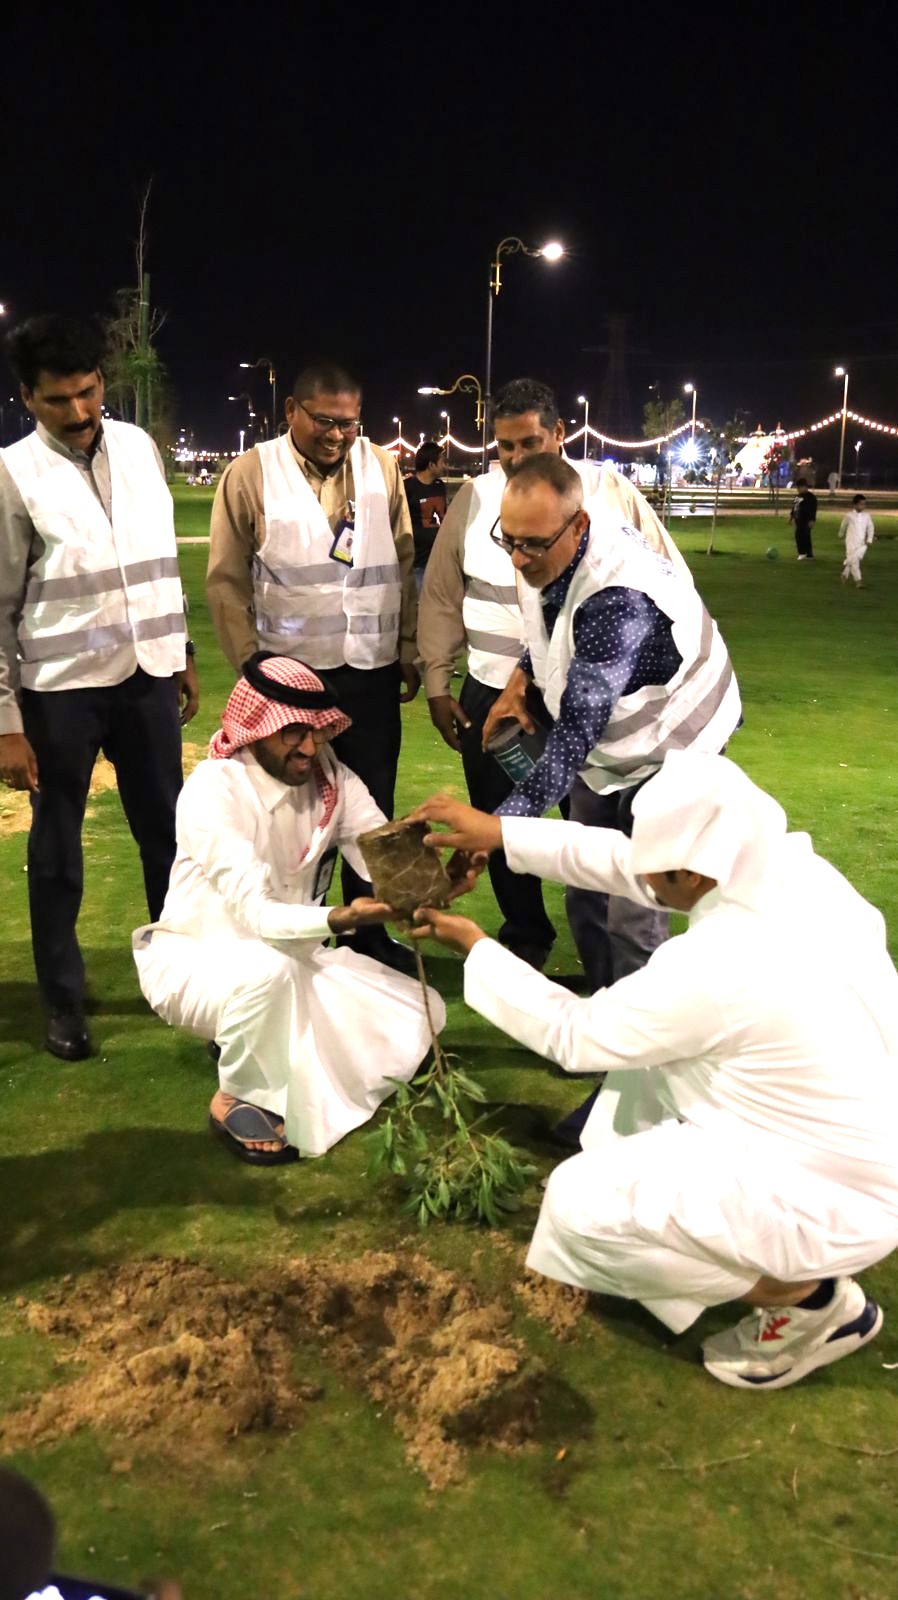 بلدية بقيق تزرع 200 شتلة من أشجار الكرفس في منتزه الروضة تزامنا مع مبادرة السعودية الخضراء*